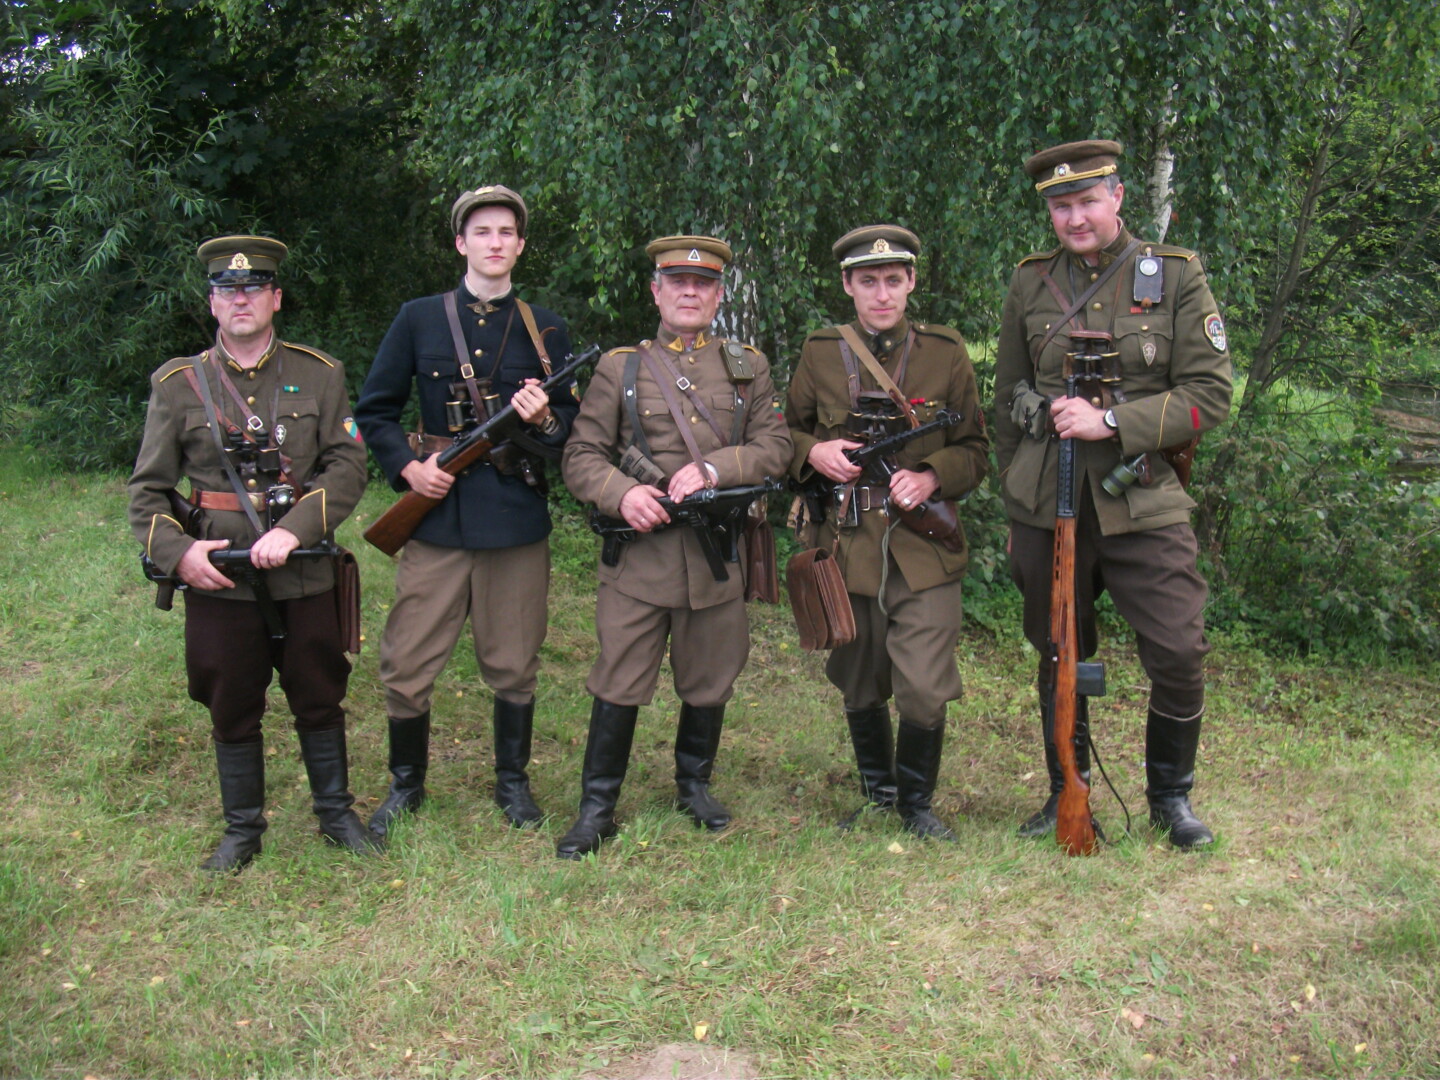 Ginkluoto pasipriešinimo sovietų okupacijai dalyviams vilkėti uniformą reiškė rizikuoti gyvybe, tačiau Lietuvos partizanai su pasididžiavimu dėvėjo šį savo kovos simbolį.